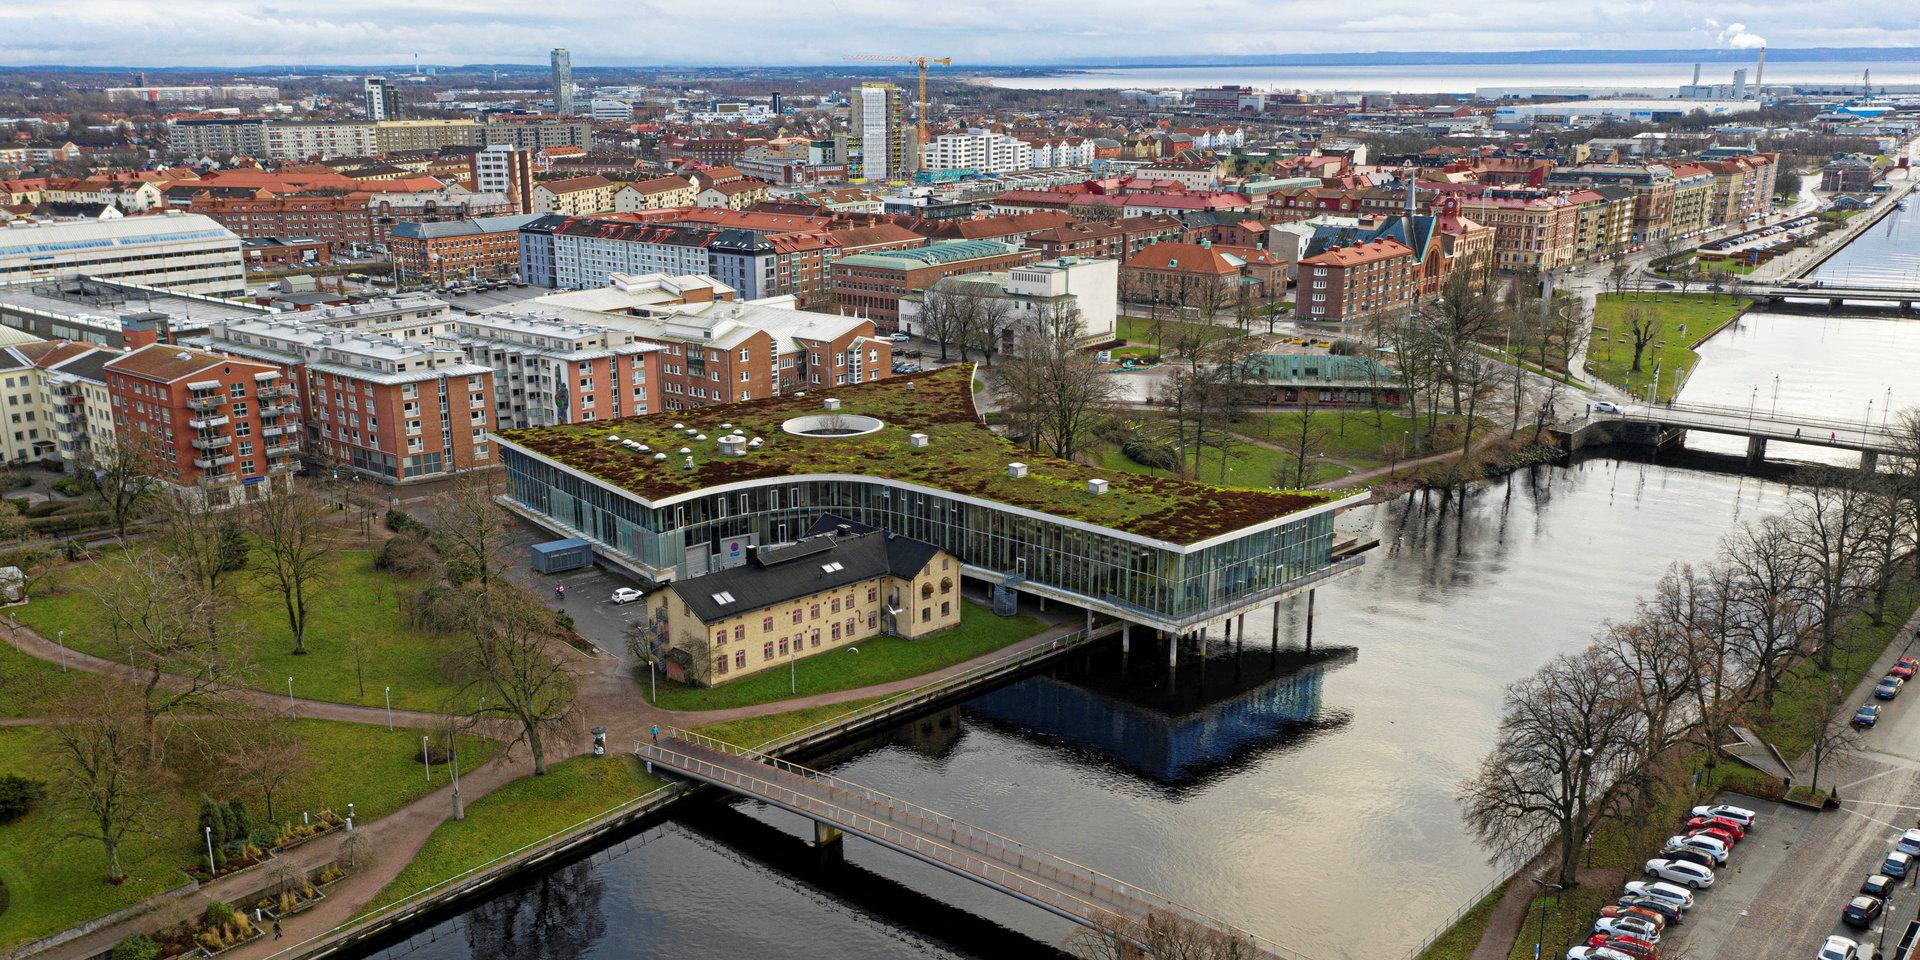 Att ett nytt stort hotell i centrala Halmstad skulle förbättra problemen med citykärnan och bidra med något positivt för handel och kultur känns tveksamt, anser skribenten.